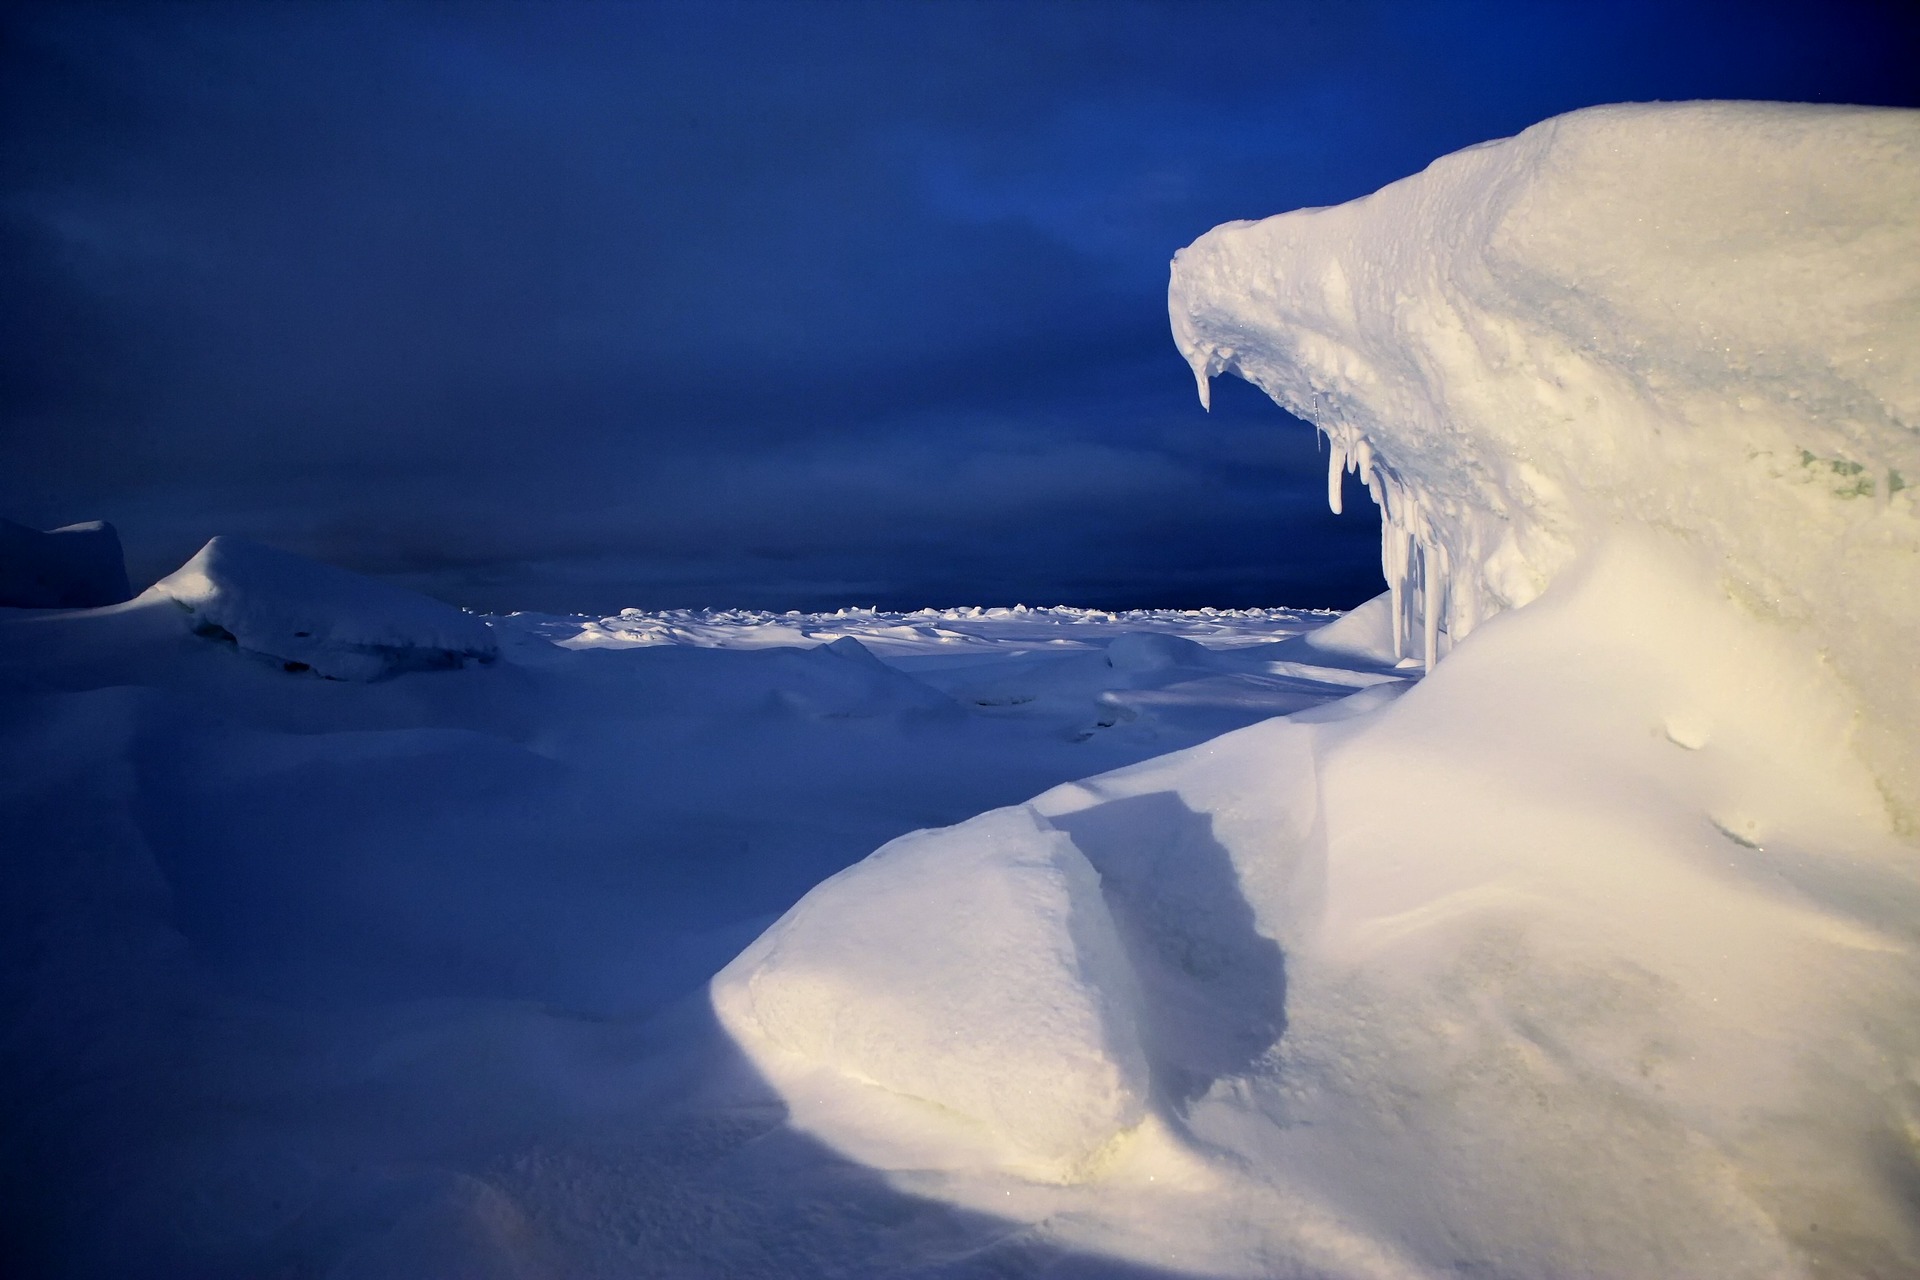 Арктика сегодня: шельфовый нефтегаз и норвежский опыт